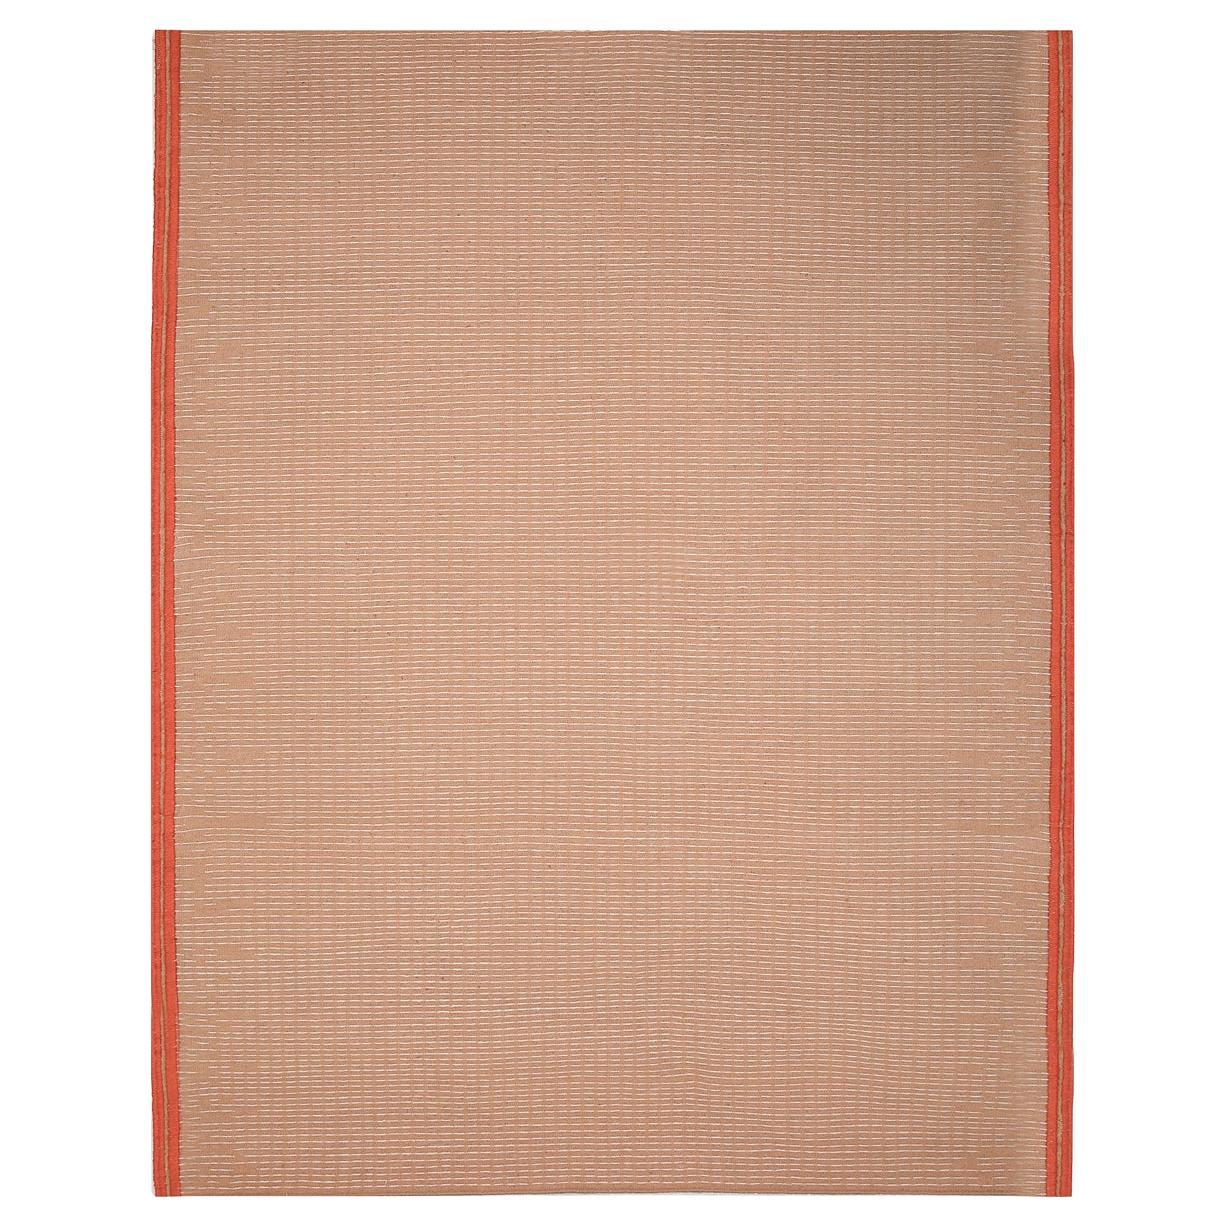 Moderner handgewebter Polypropylen-Teppich für den Außenbereich Teppich Orange&Makeup Zíngara